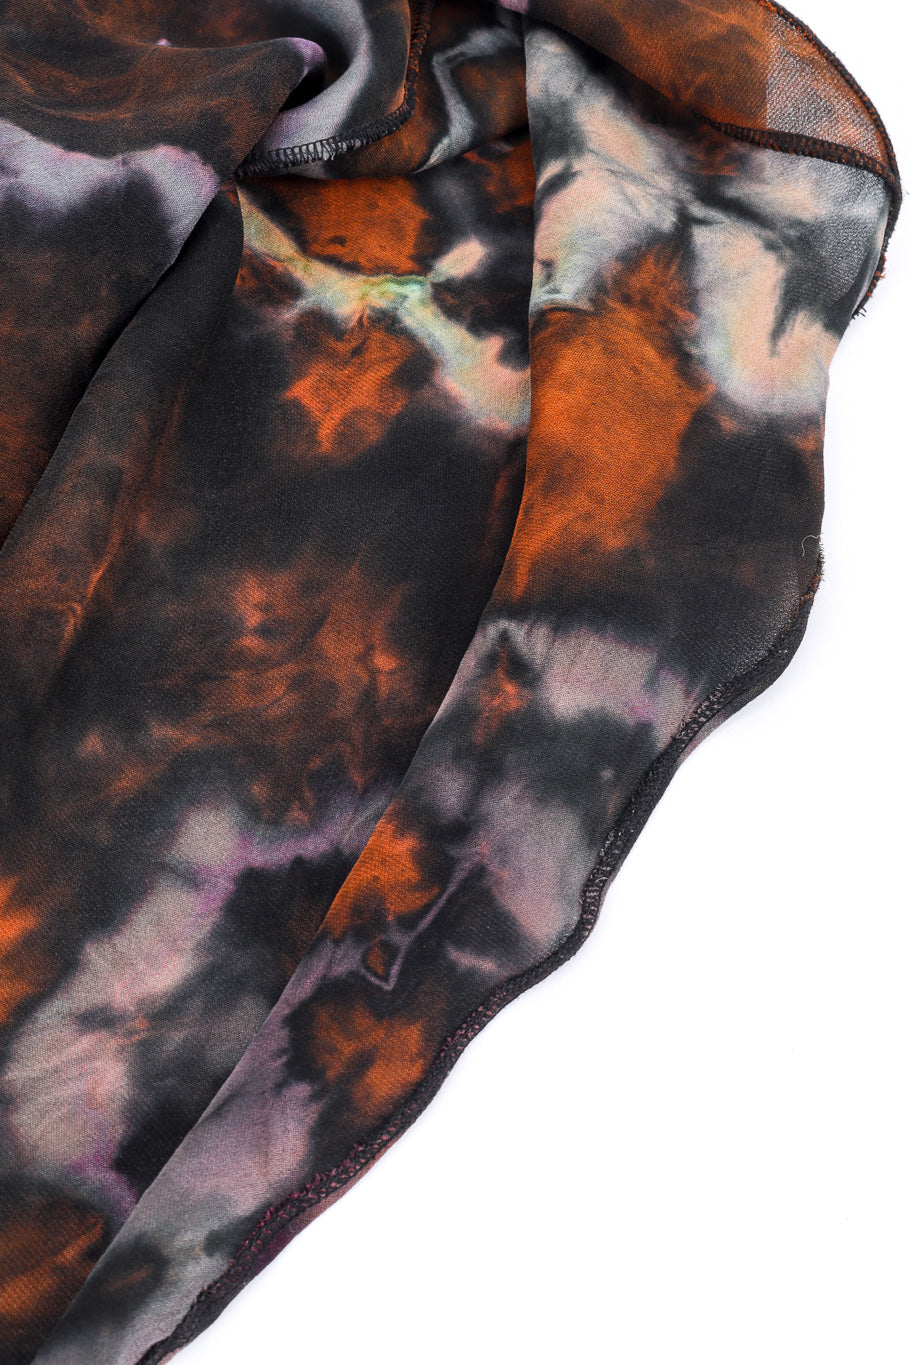 Silk Tie-Dye Bias Dress by Carter Smith hem @recessla